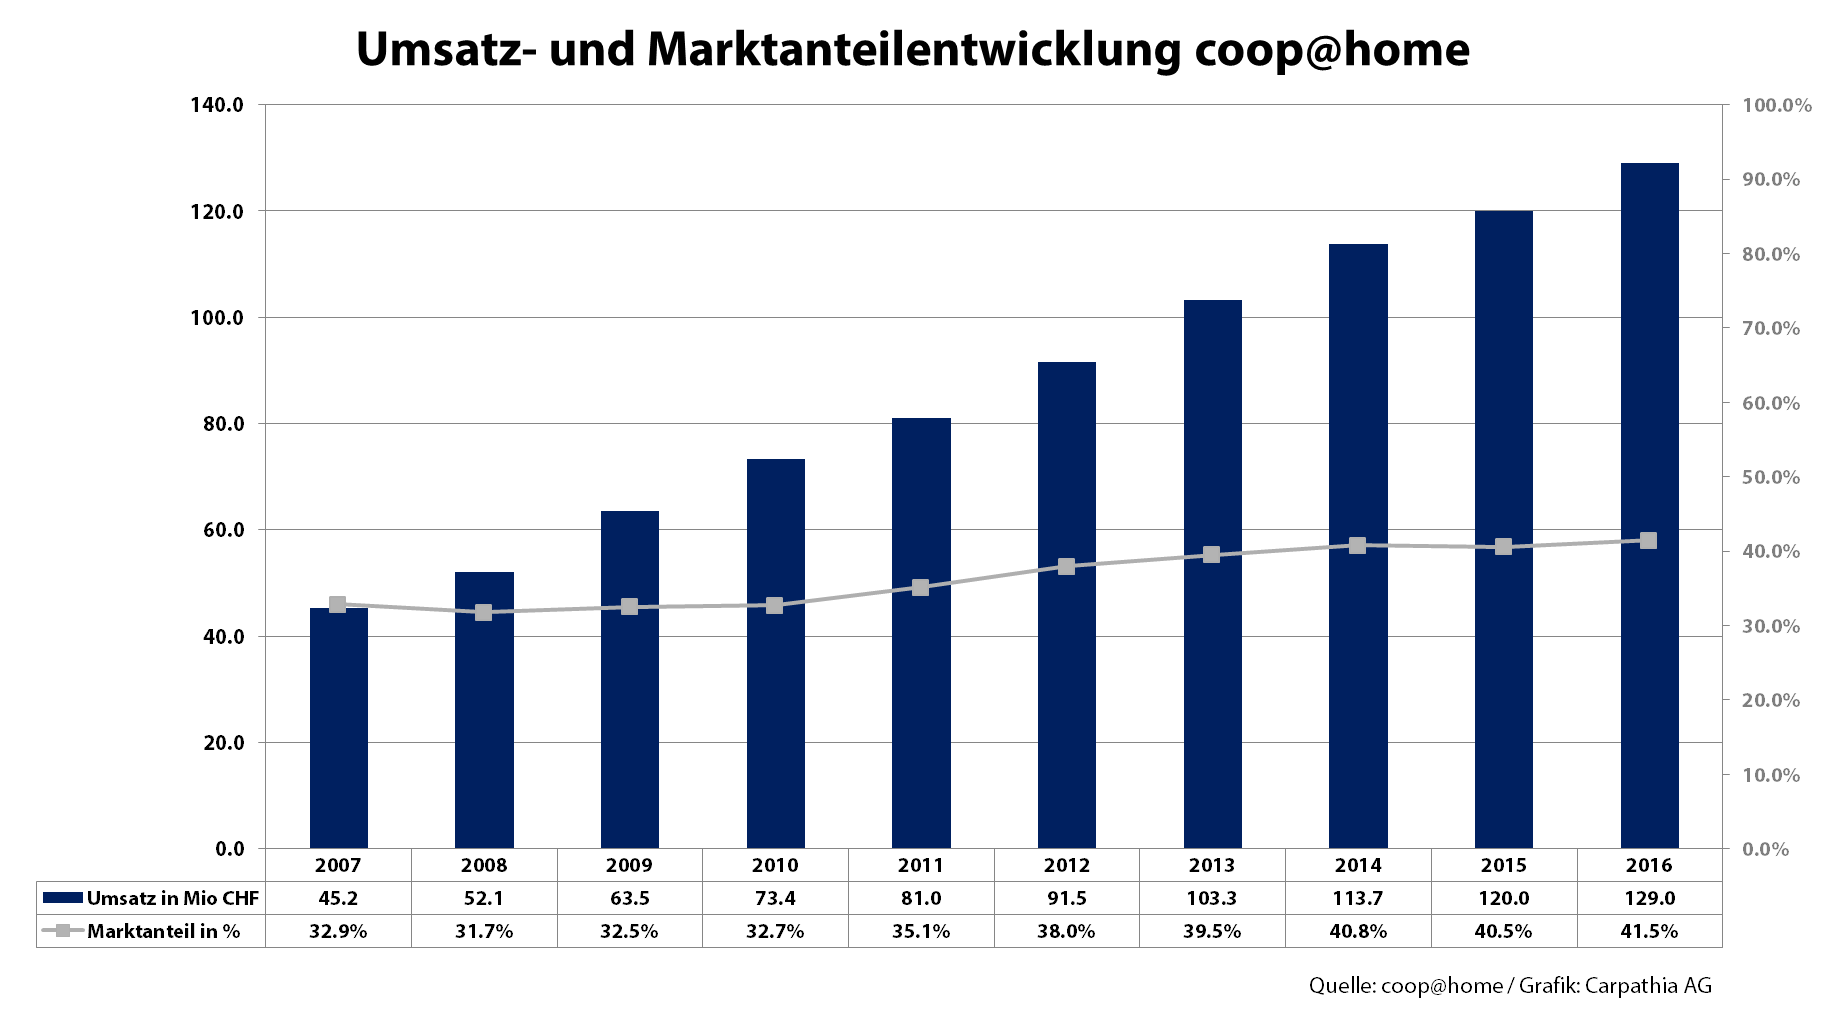 Umsatz- und Marktentwicklung coop@home - Grafik Carpathia AG - Quelle: coop@home